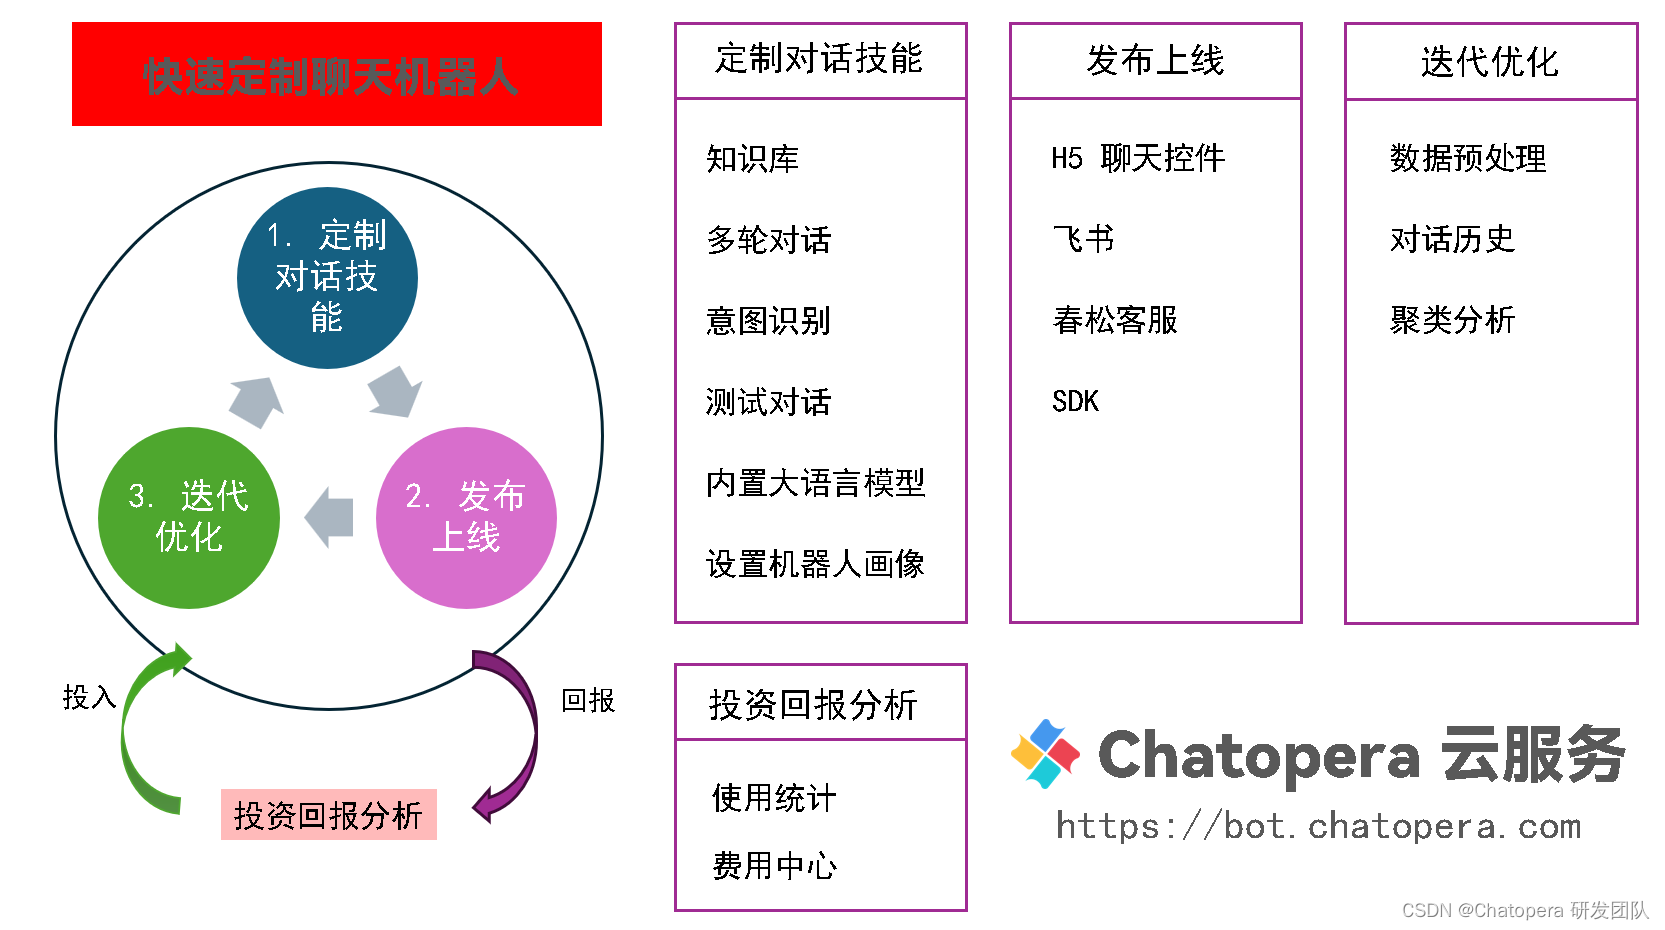 上传文件生成聊天机器人，实现客服、办公自动化智能体 | Chatopera